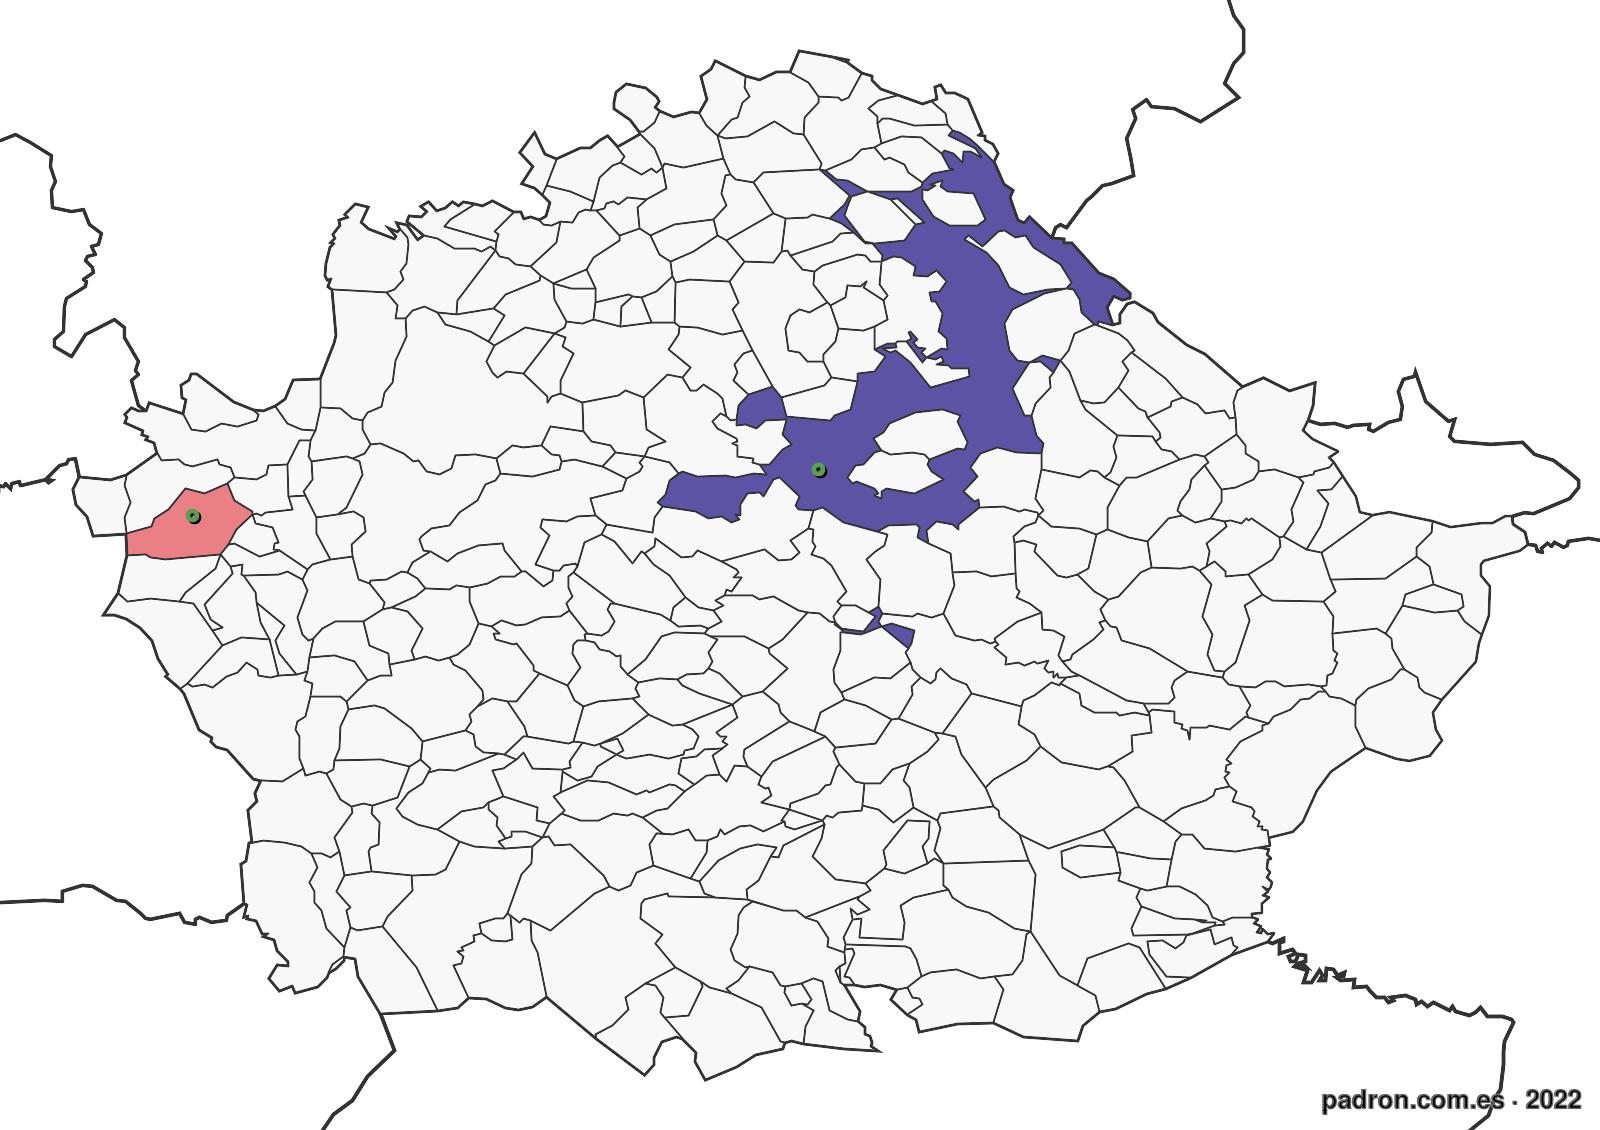 búlgaros en cuenca.